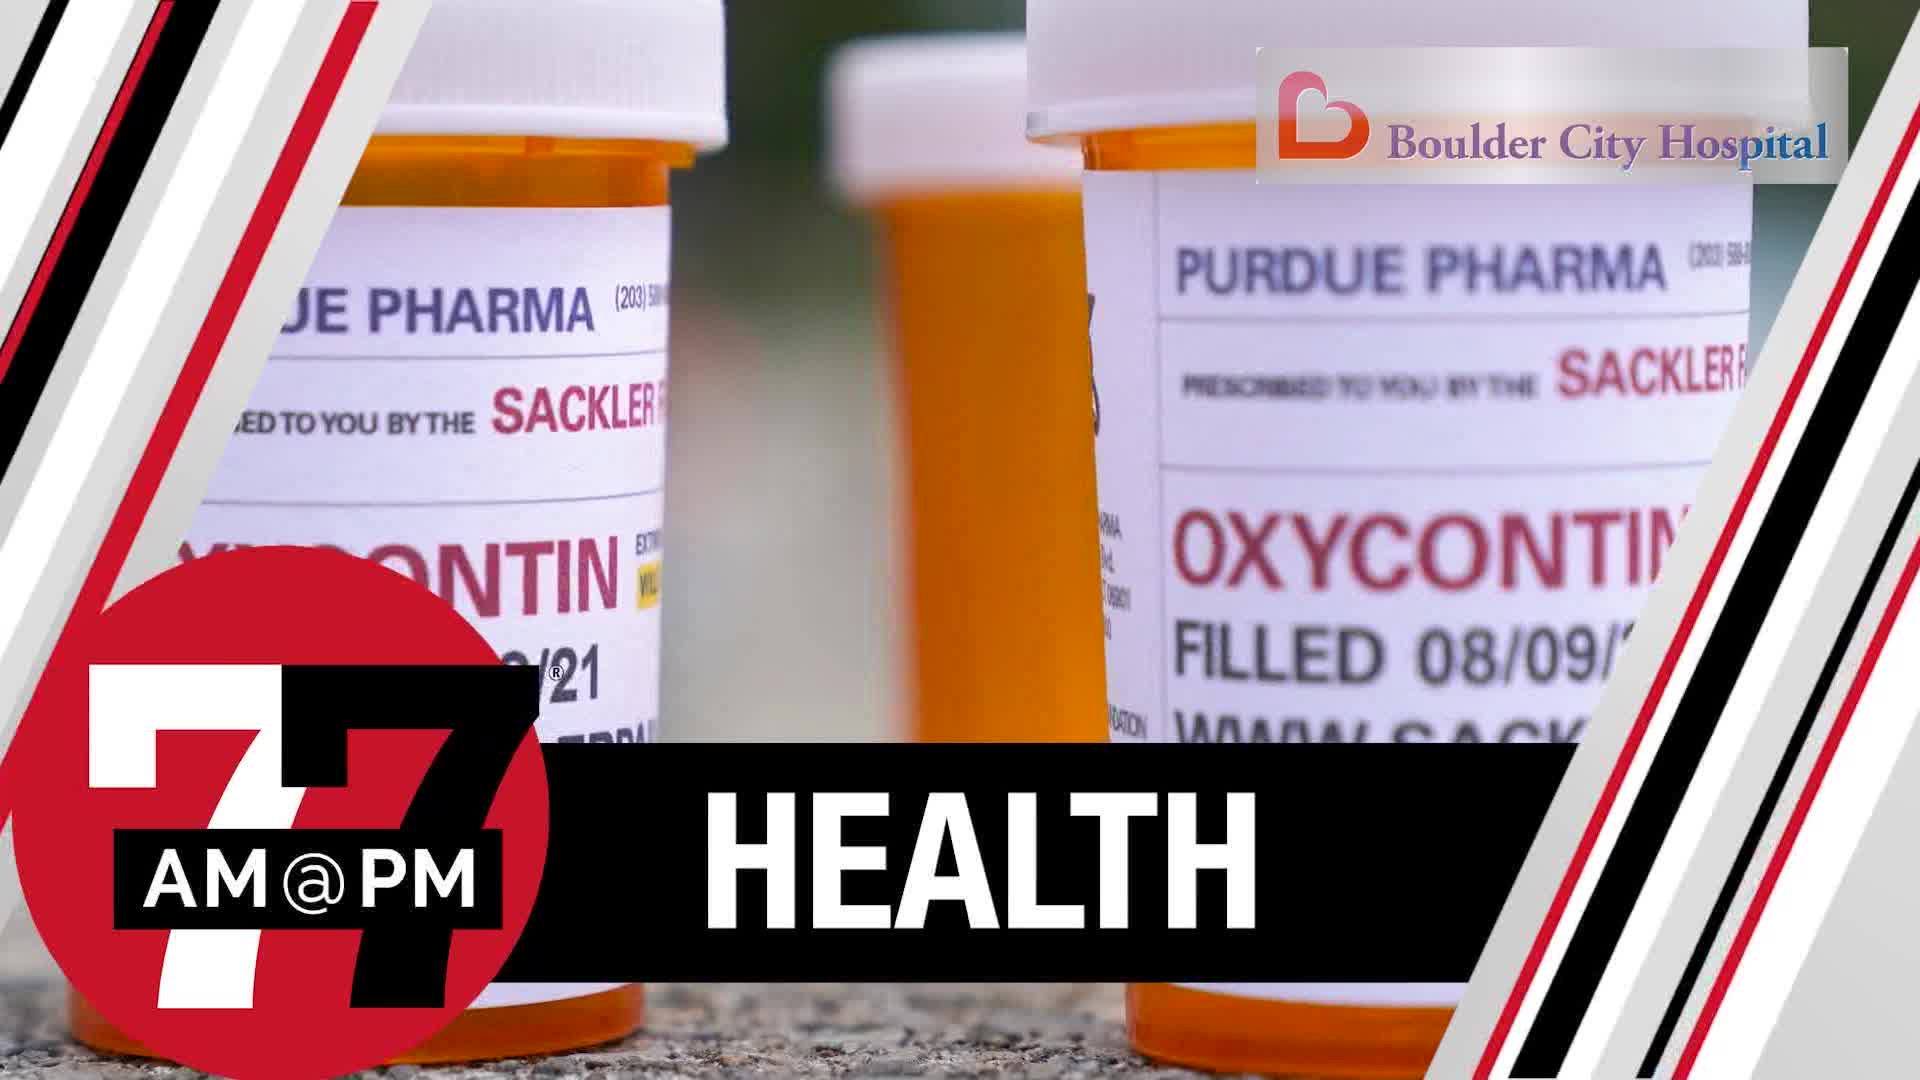 16 million dollars to fight opioid crisis